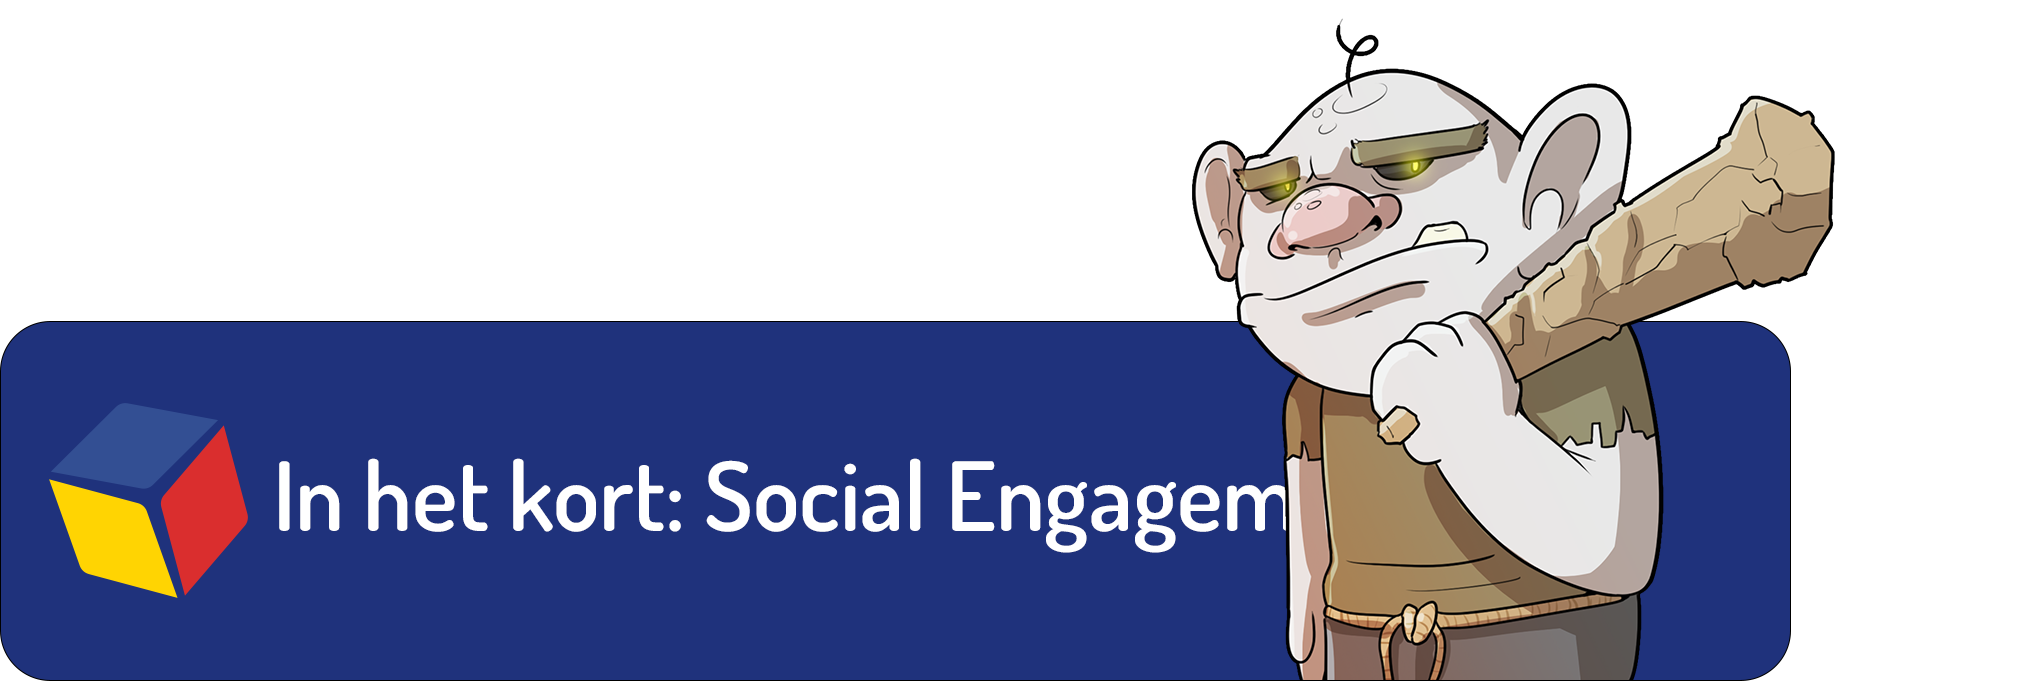 Tridim: Social media engagement